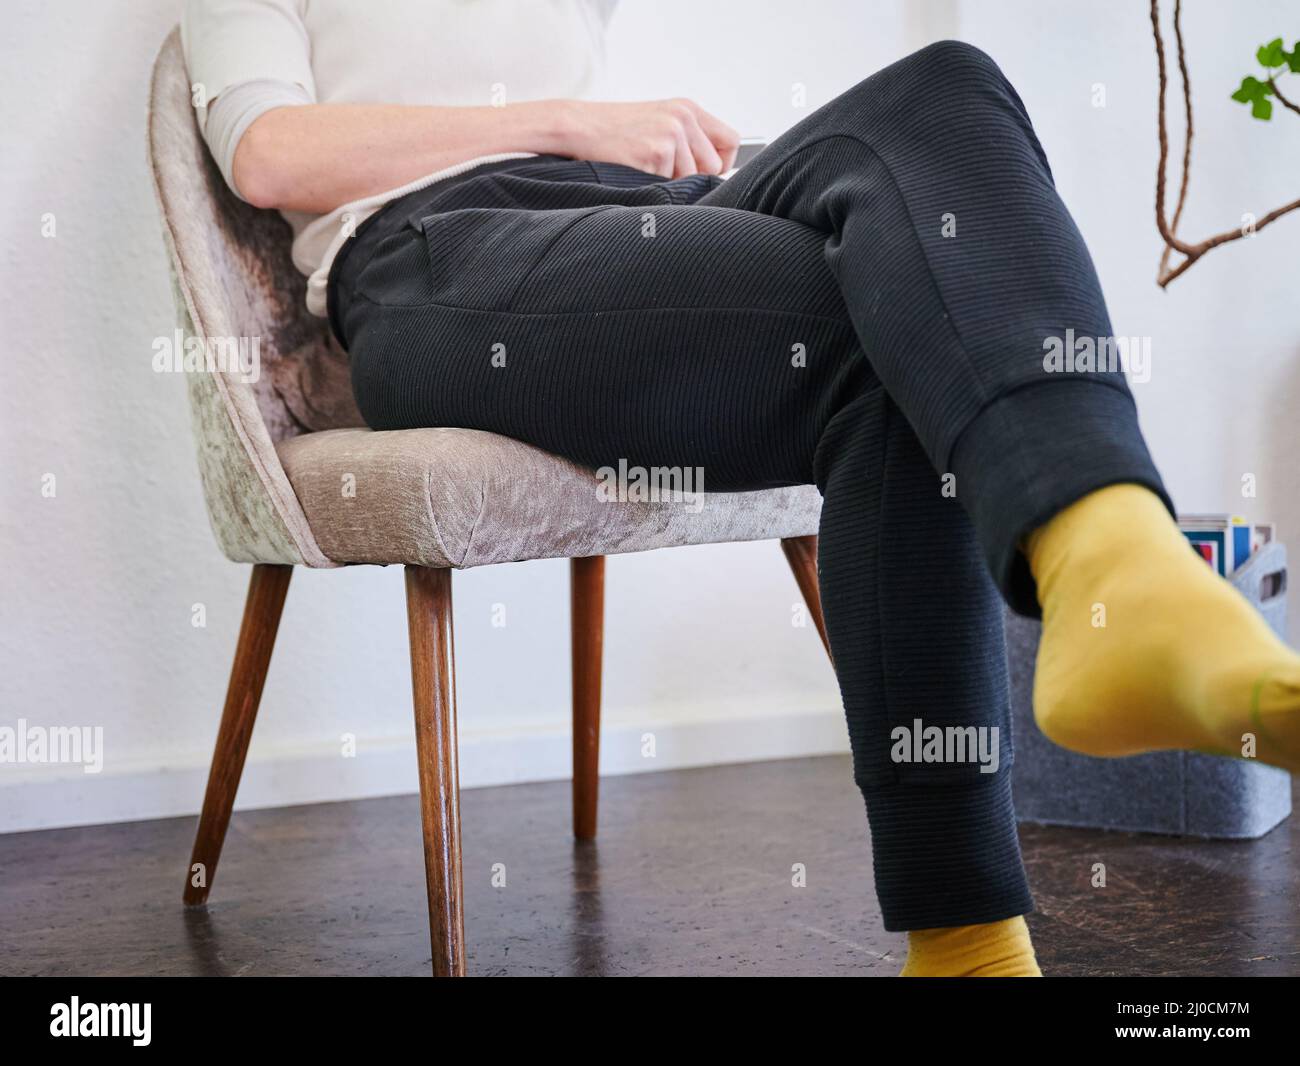 ILLUSTRAZIONE - 07 marzo 2022, Berlino: Una donna è seduta su una poltrona in pantaloni. In Corona vita quotidiana i pantaloni sono il capo più caldo di abbigliamento. Foto: Annette Riedl/dpa Foto Stock